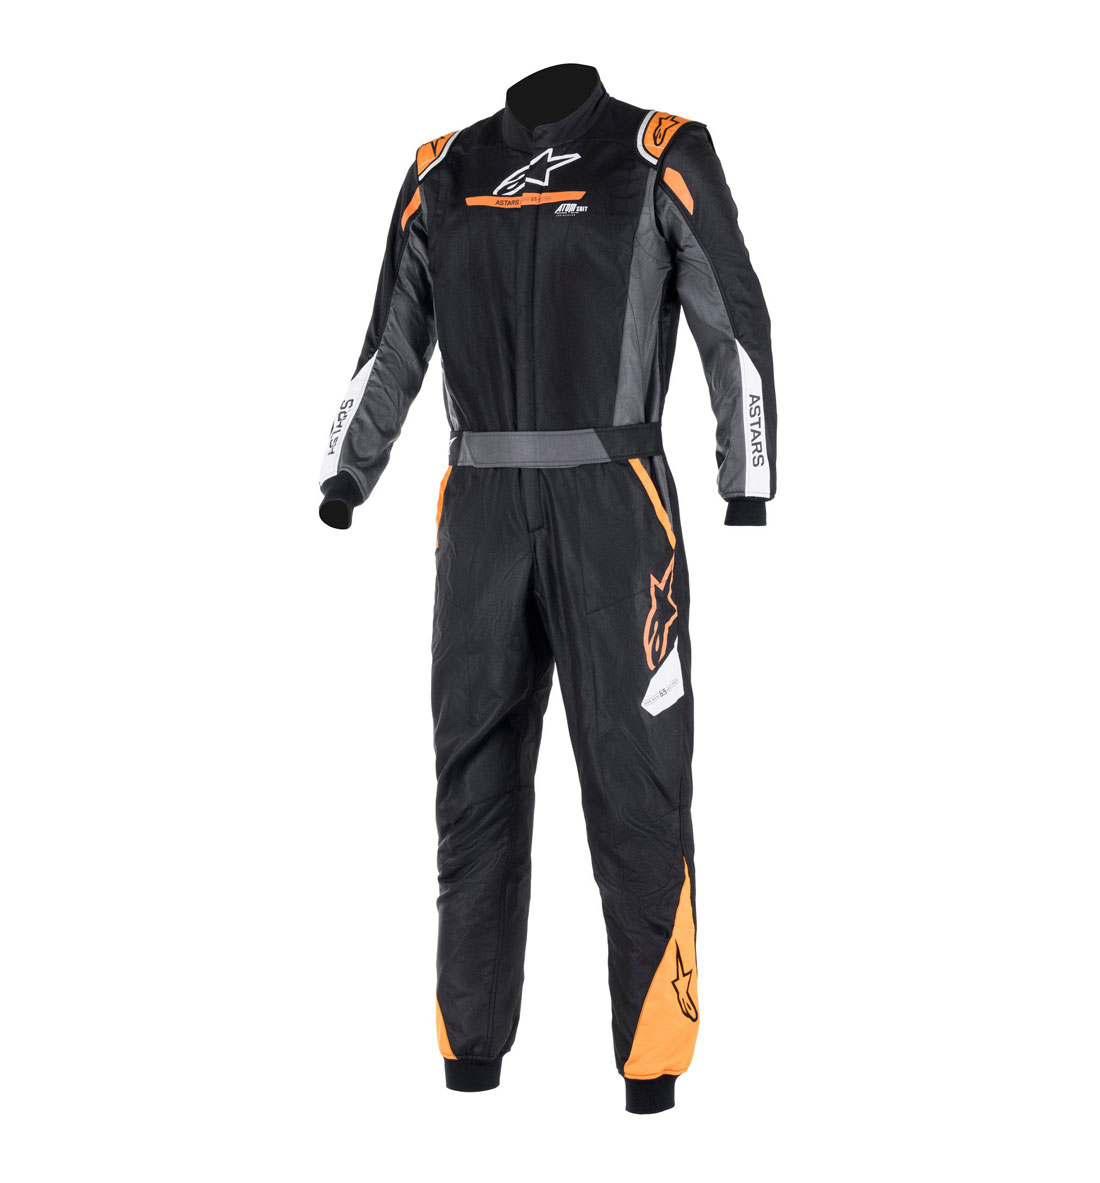 Alpinestars Atom Race Suit - Black/Anthracite/Orange Fluo